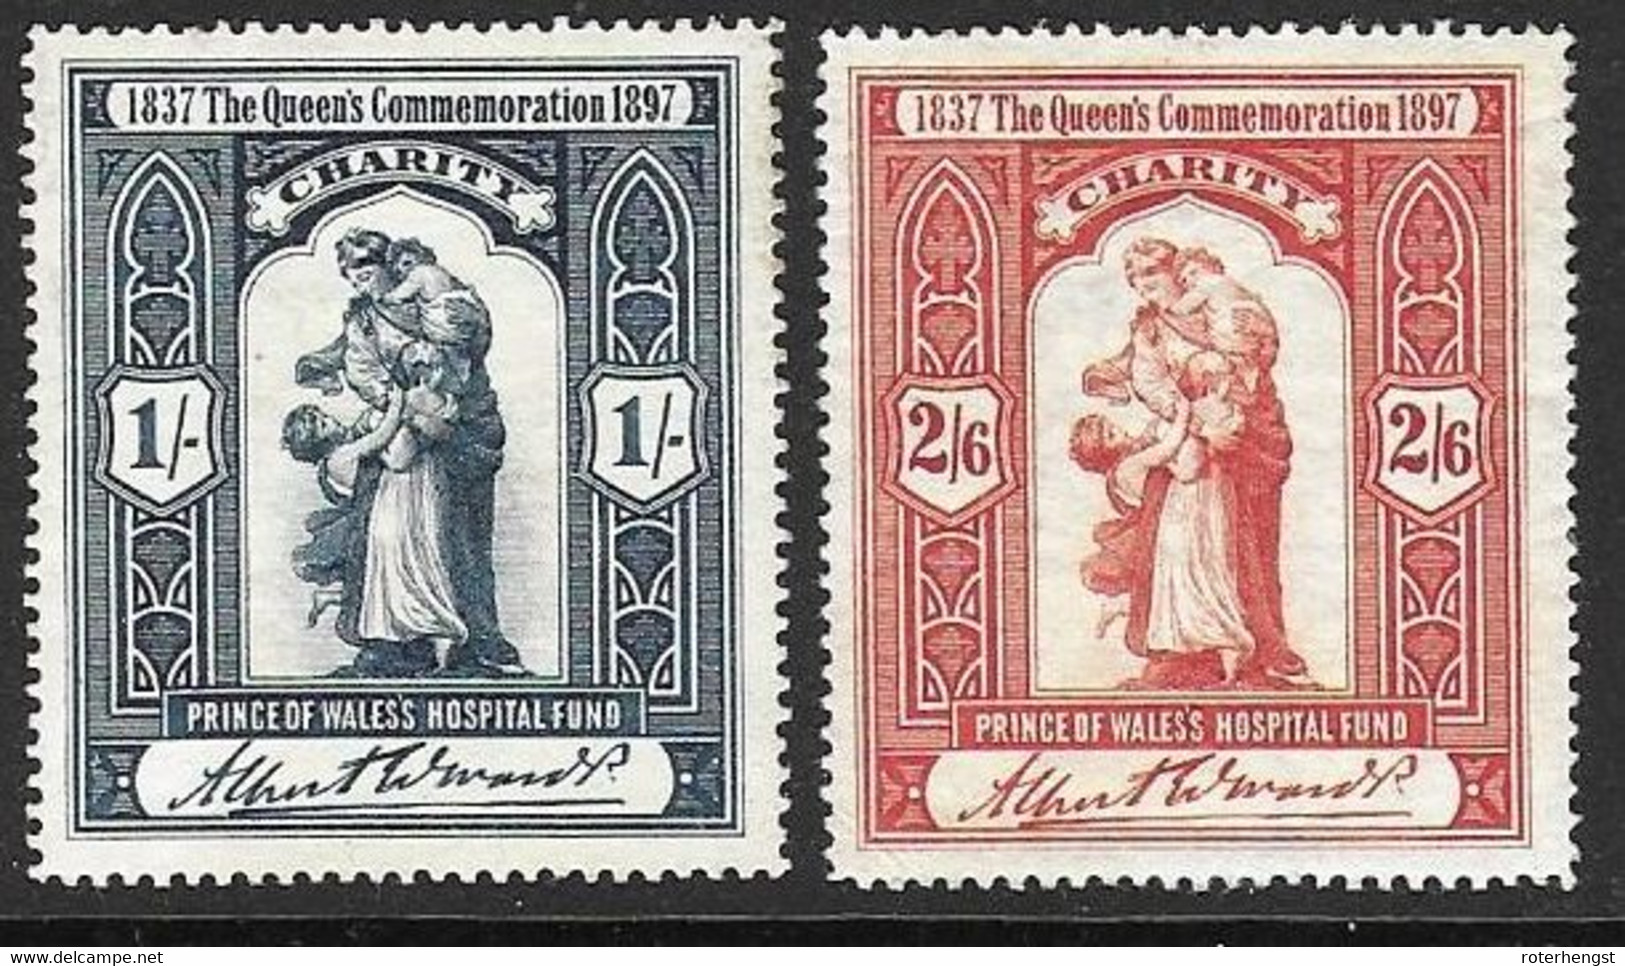 Queens Commemoration 1897 Mh * Charity Stamps - Ongebruikt